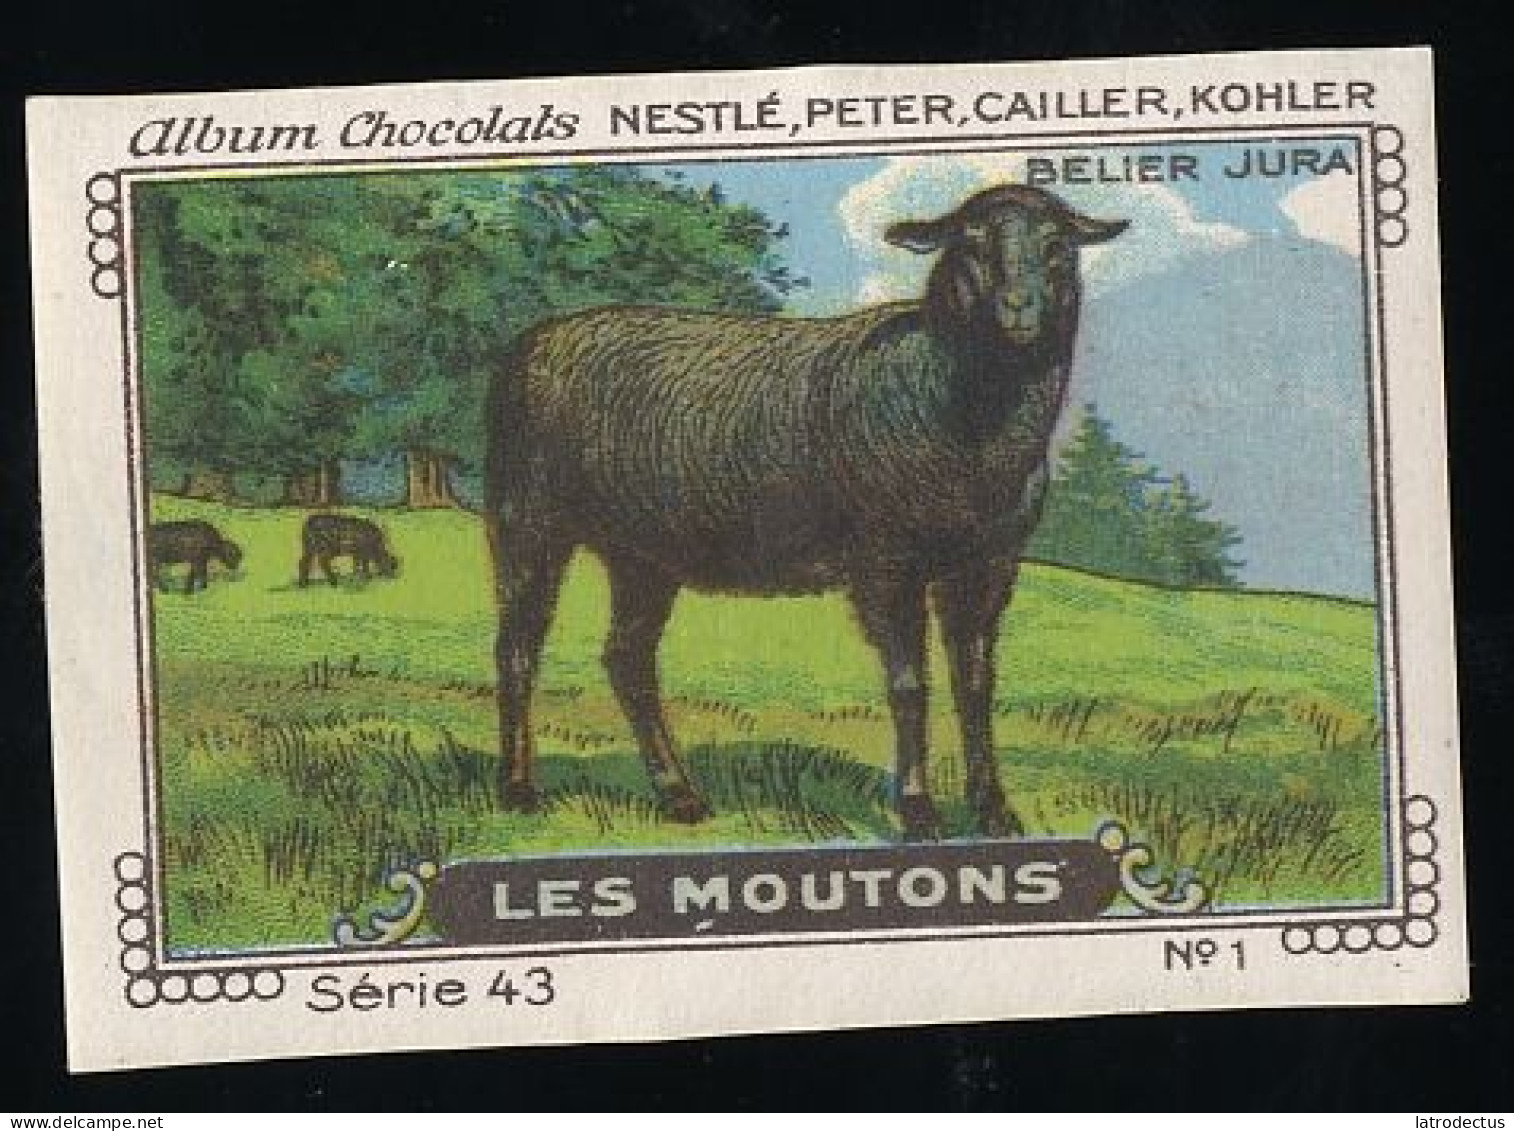 Nestlé - 43 - Les Moutons, Sheep - 1 - Belier Jura - Nestlé